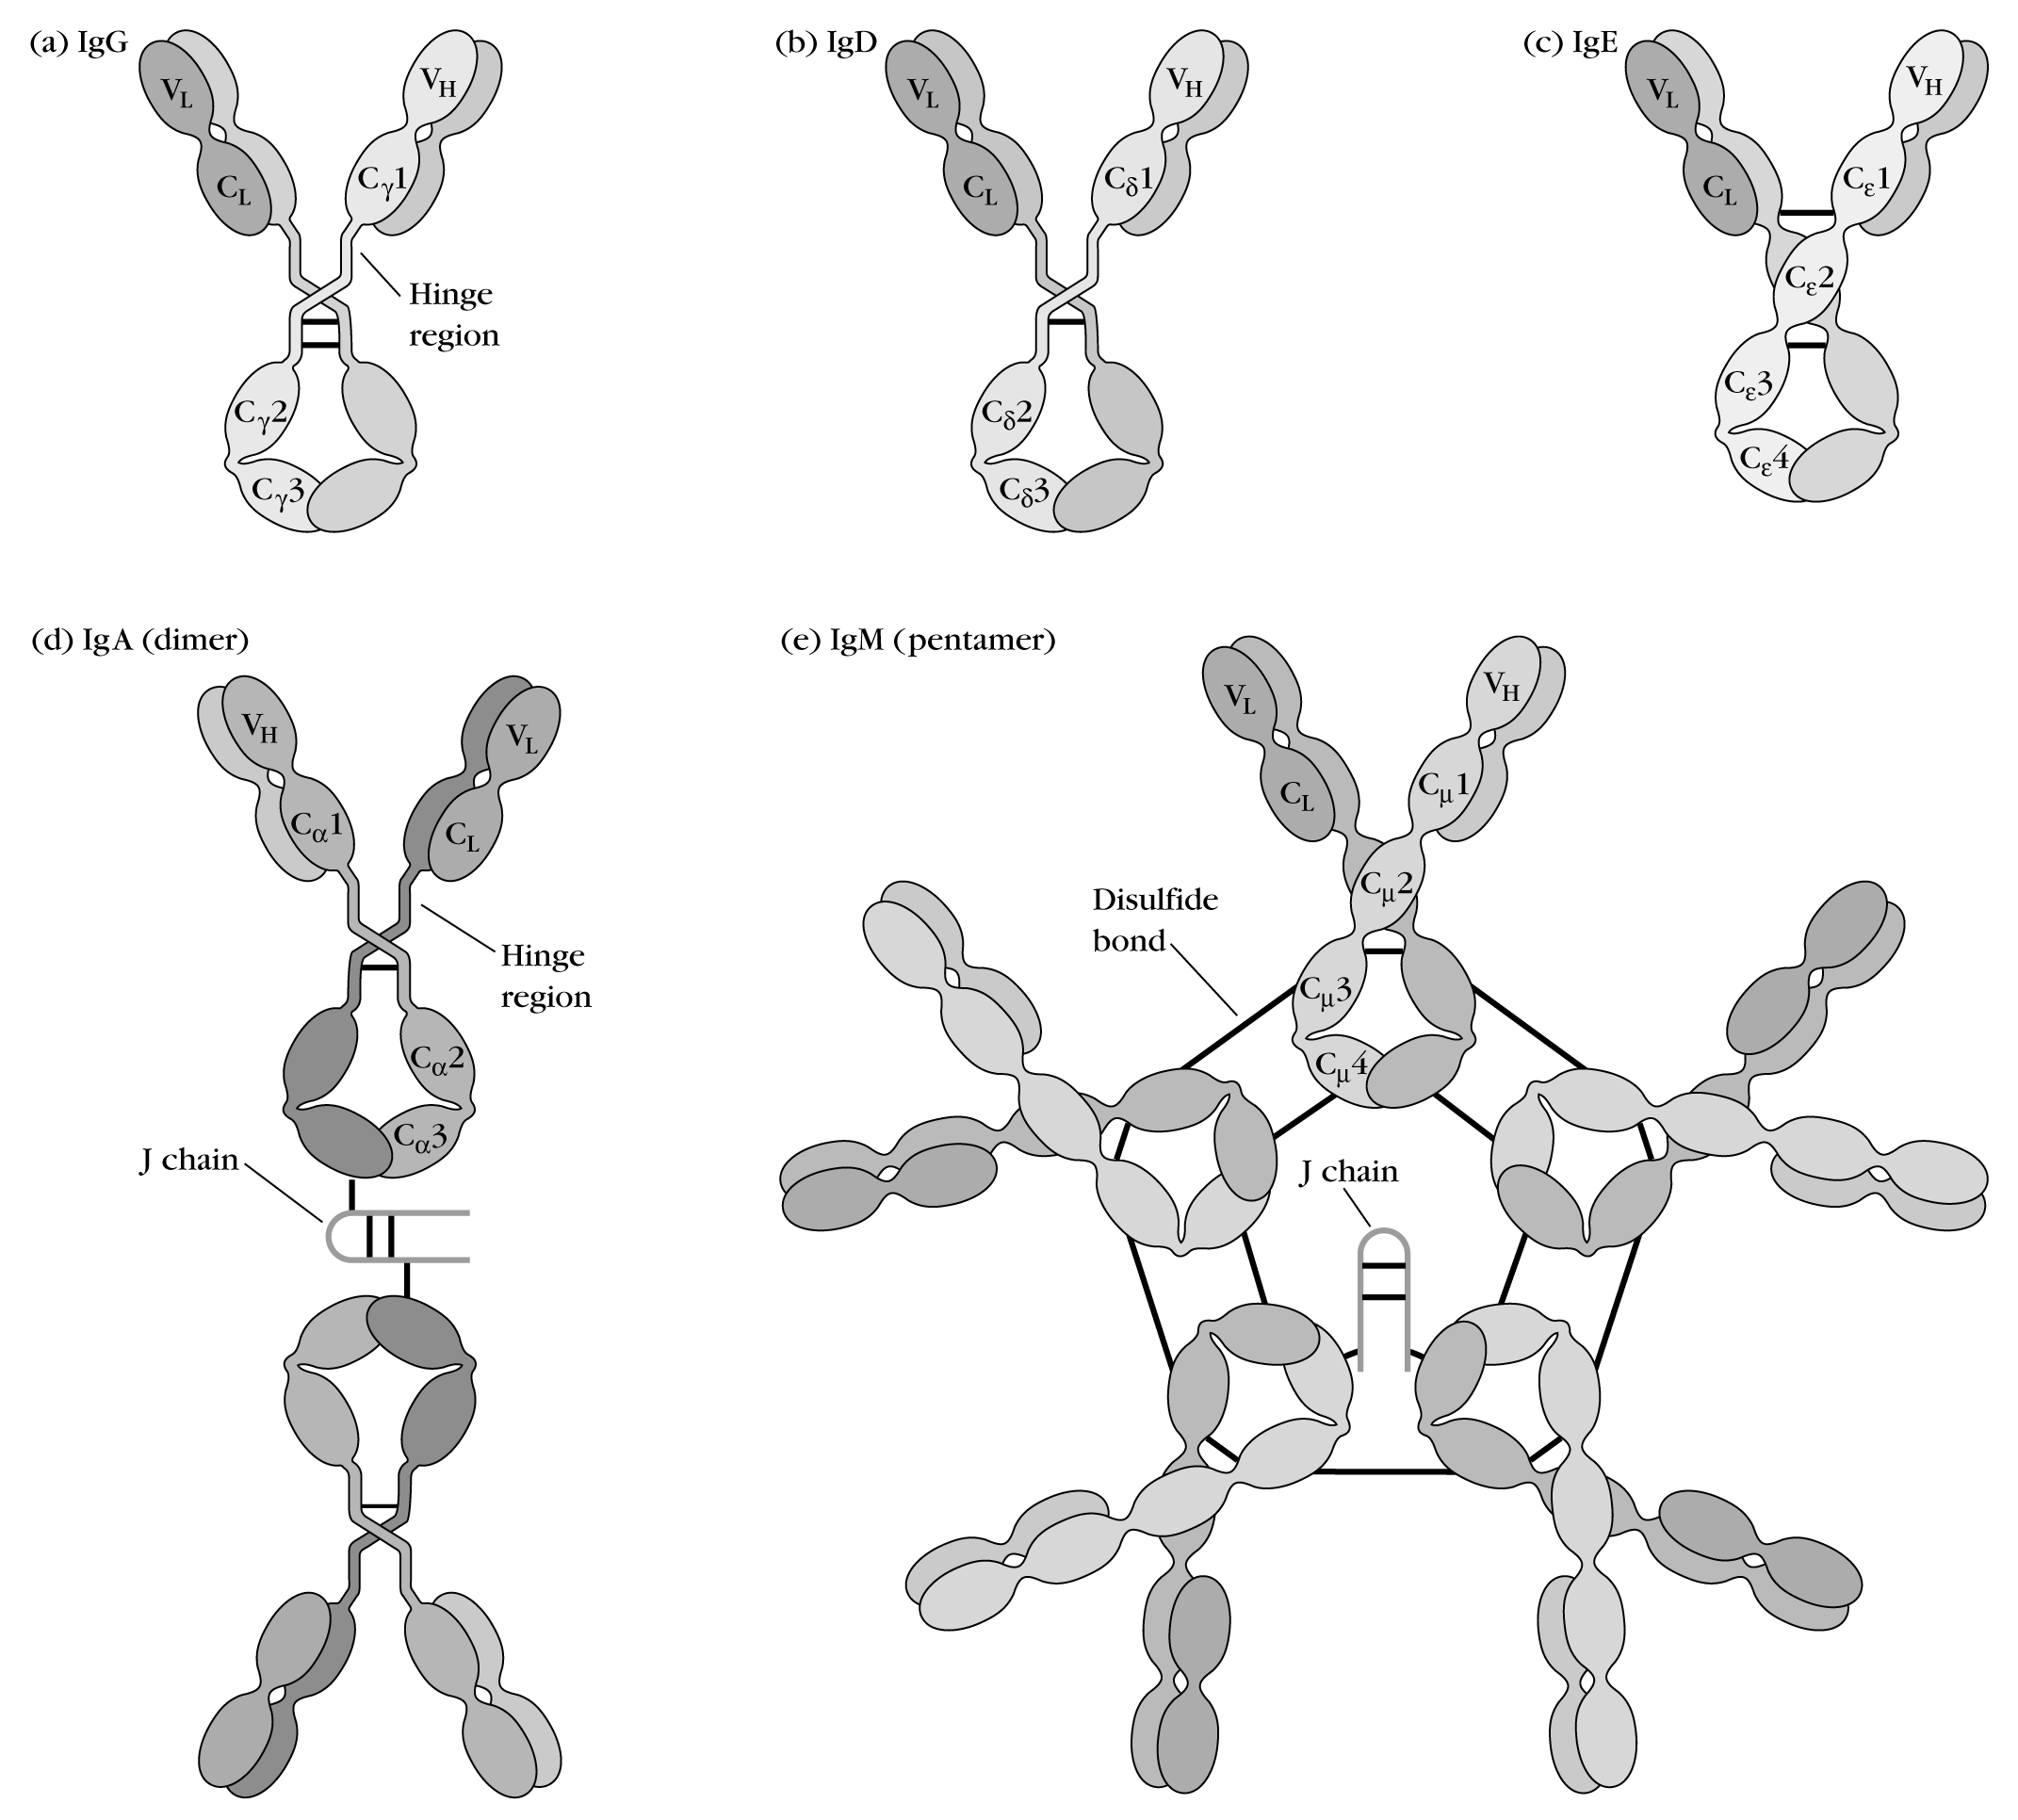 Иммуноглобулинов класса igg. Иммуноглобулин m строение. Иммуноглобулин д структура. IGM строение иммуноглобулина. Иммуноглобулины класса d (IGD).